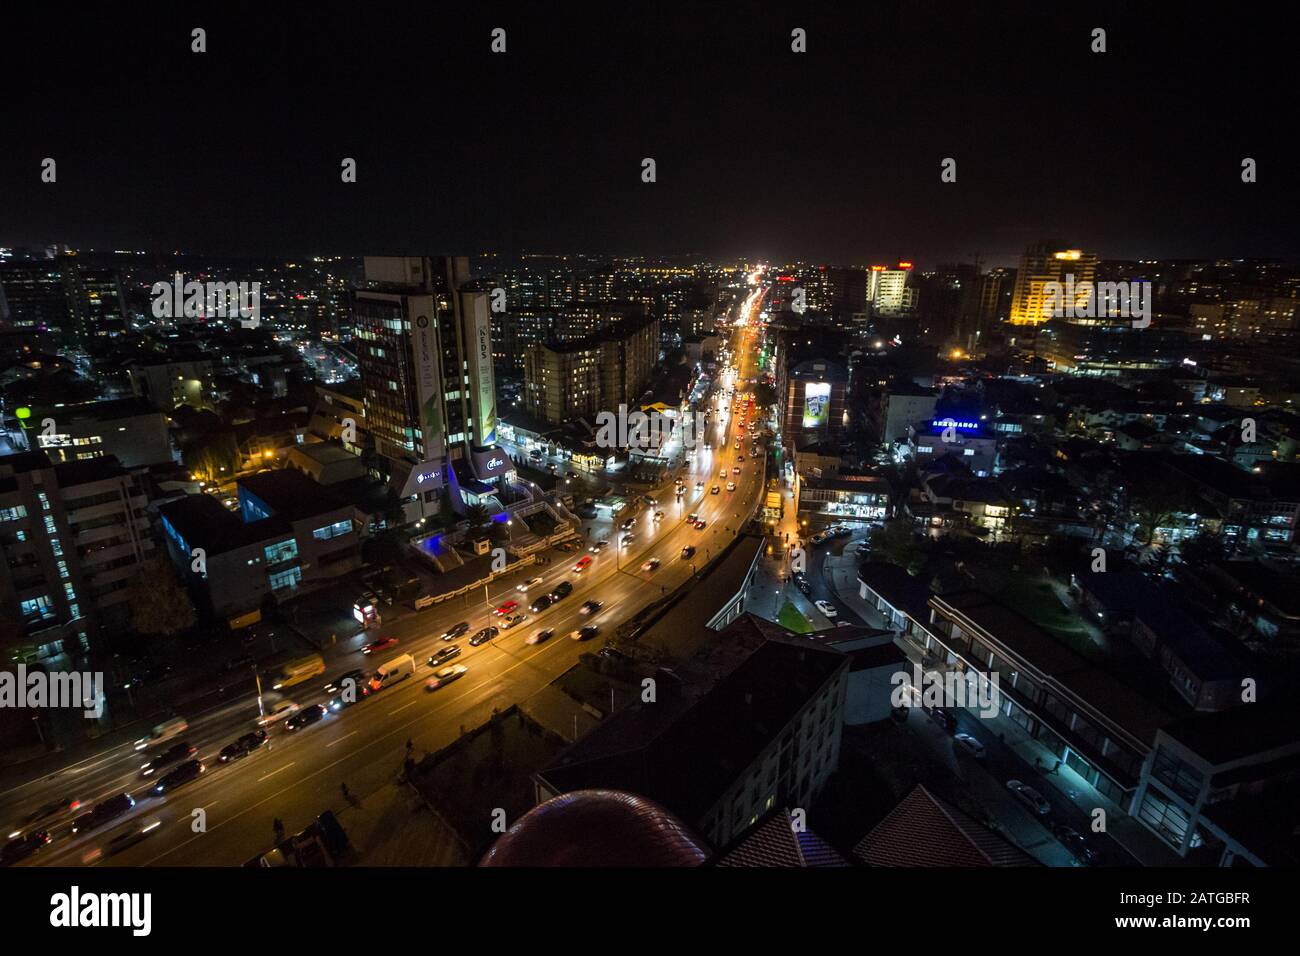 PRISHTINA, KOSOVO - November 11, 2016: Nachtansicht der Bill Clinton Boulevard und George W Bush Boulevard in Prishtina mit Autos und Verkehr p Stockfoto